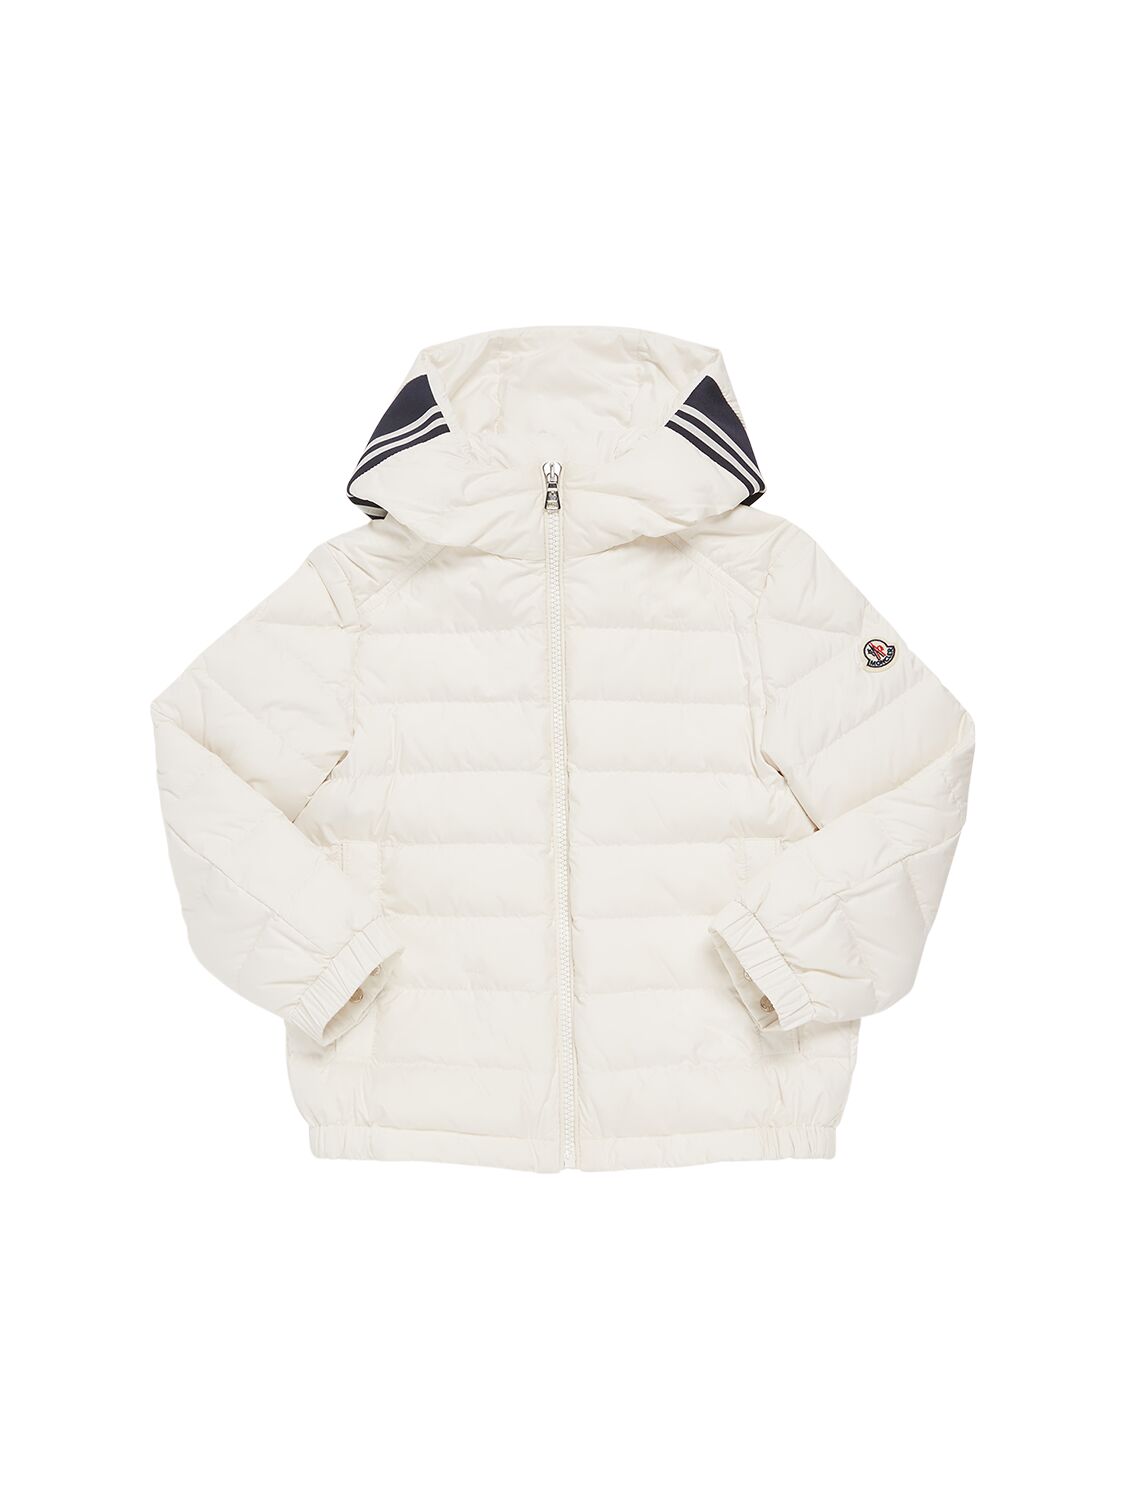 Moncler Kids' Cornour Tech Down Jacket In White